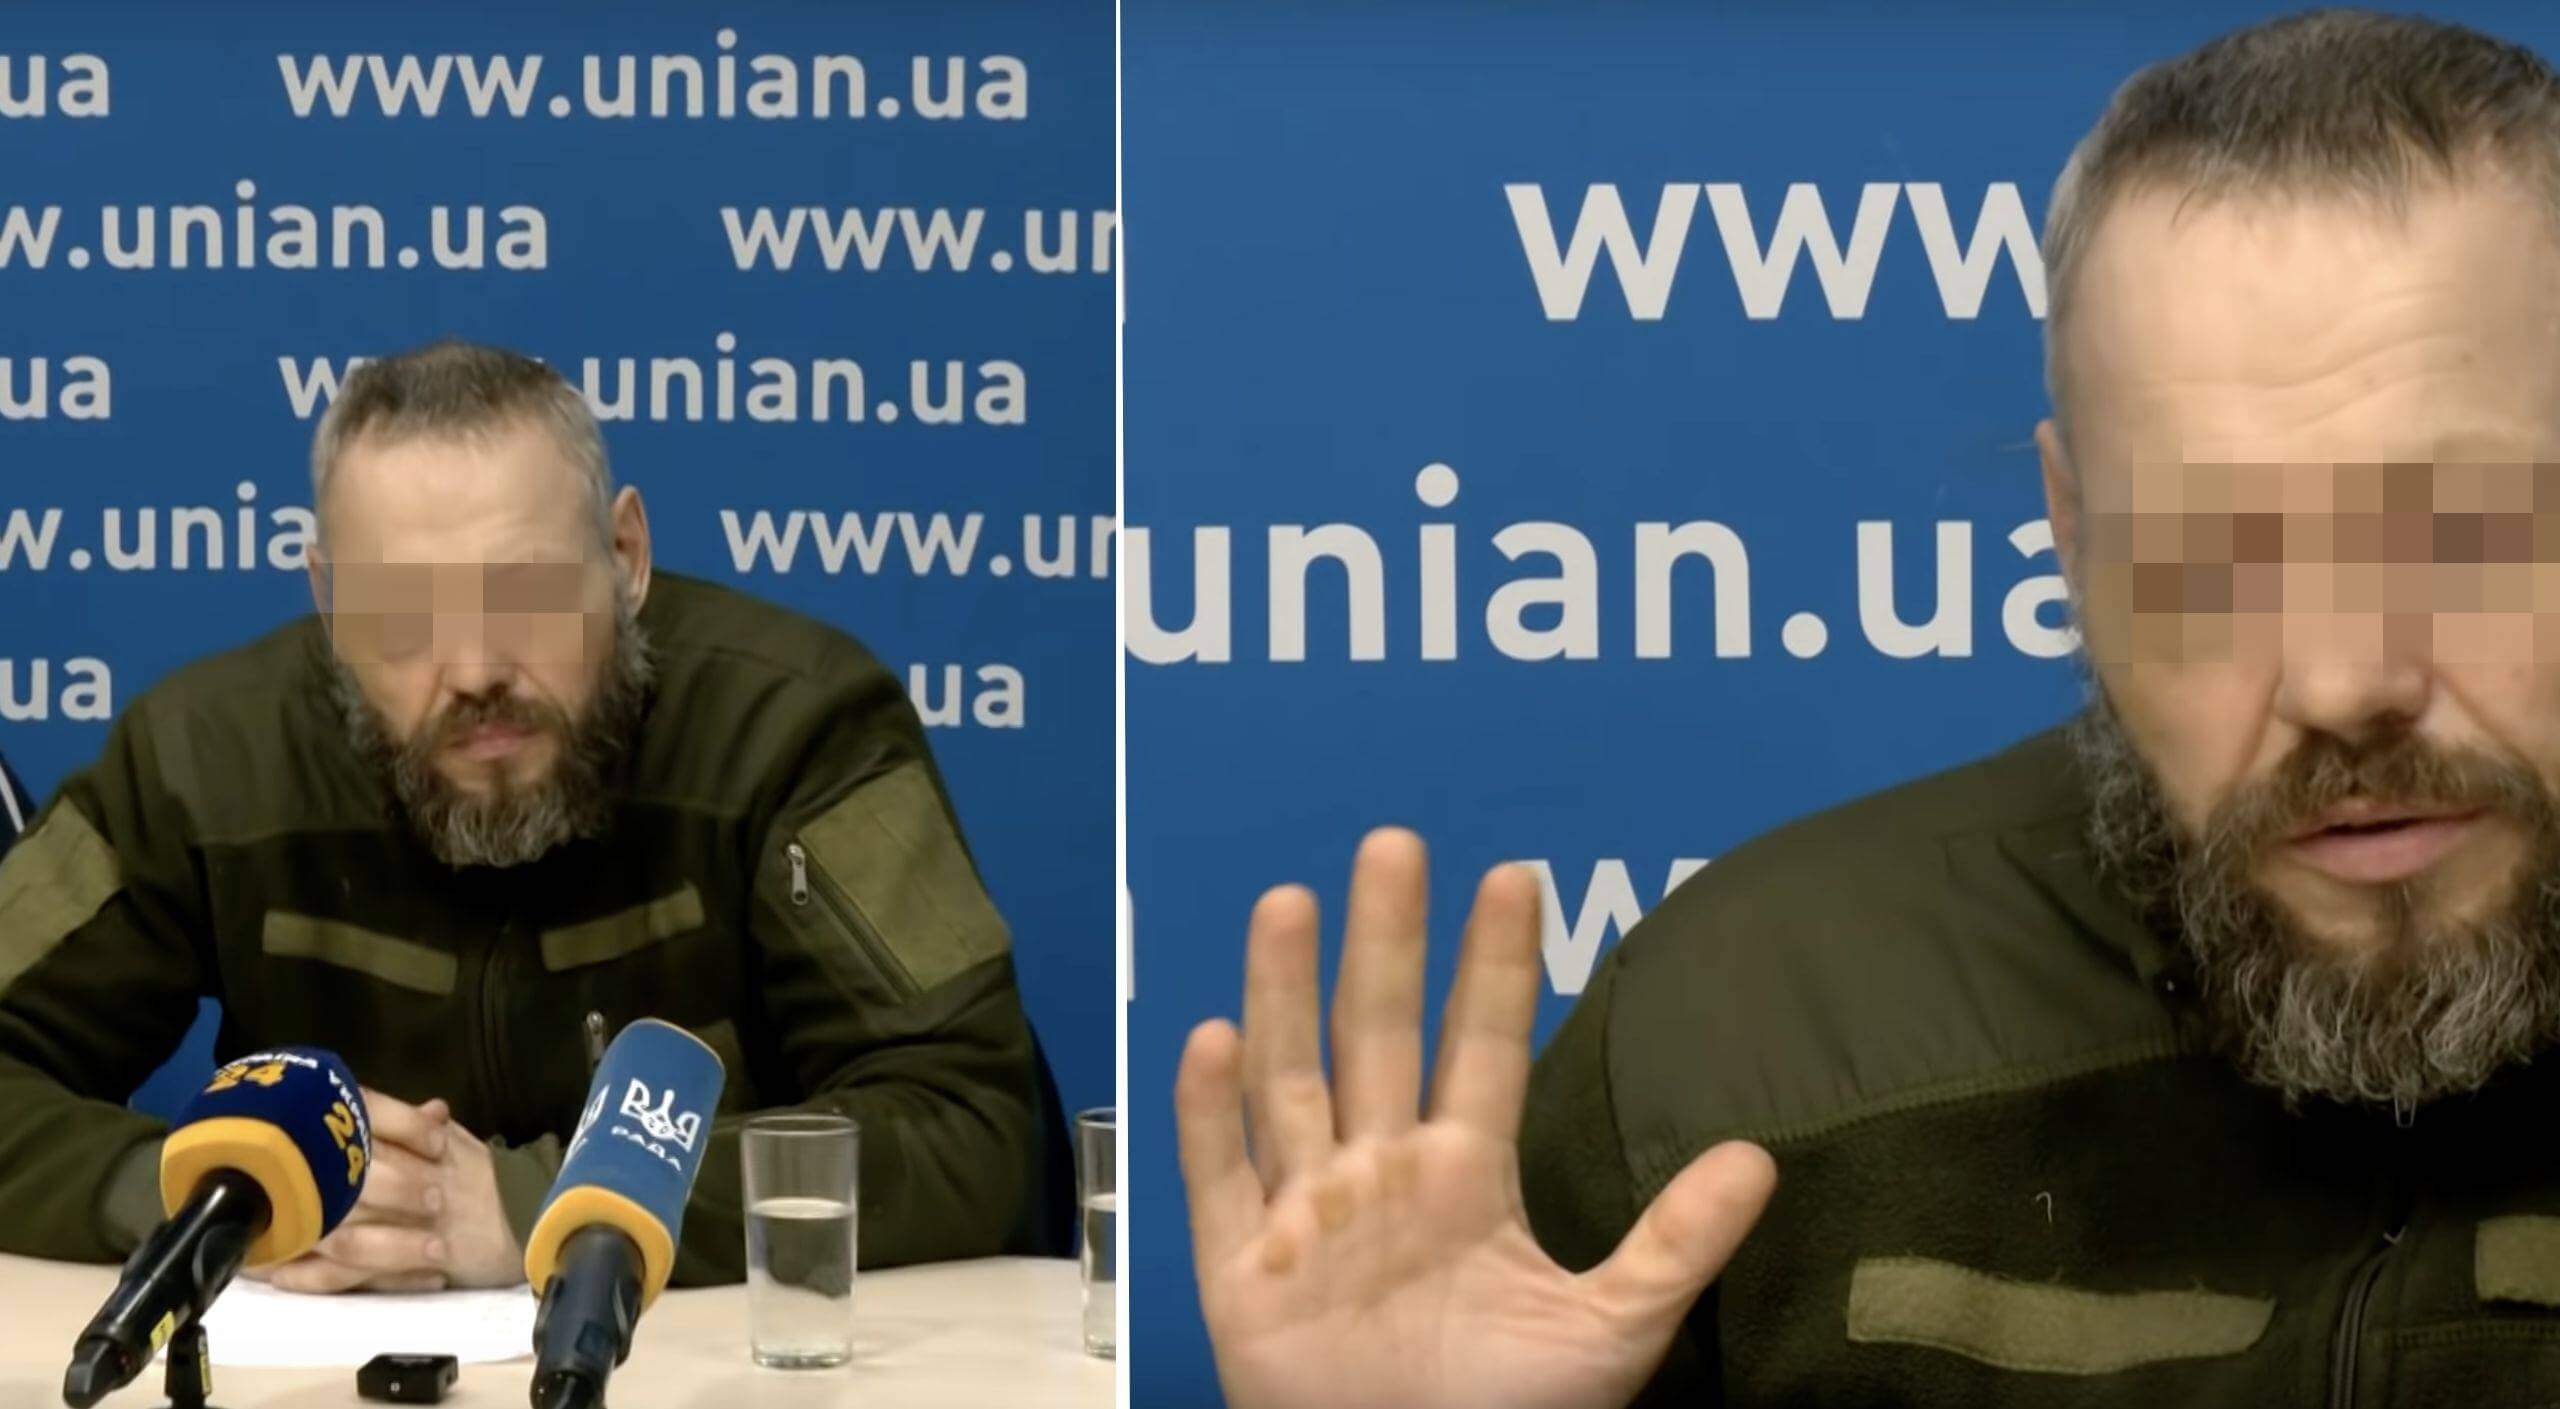 Dimitri M. bei einer Pressekonferenz in der Ukraine